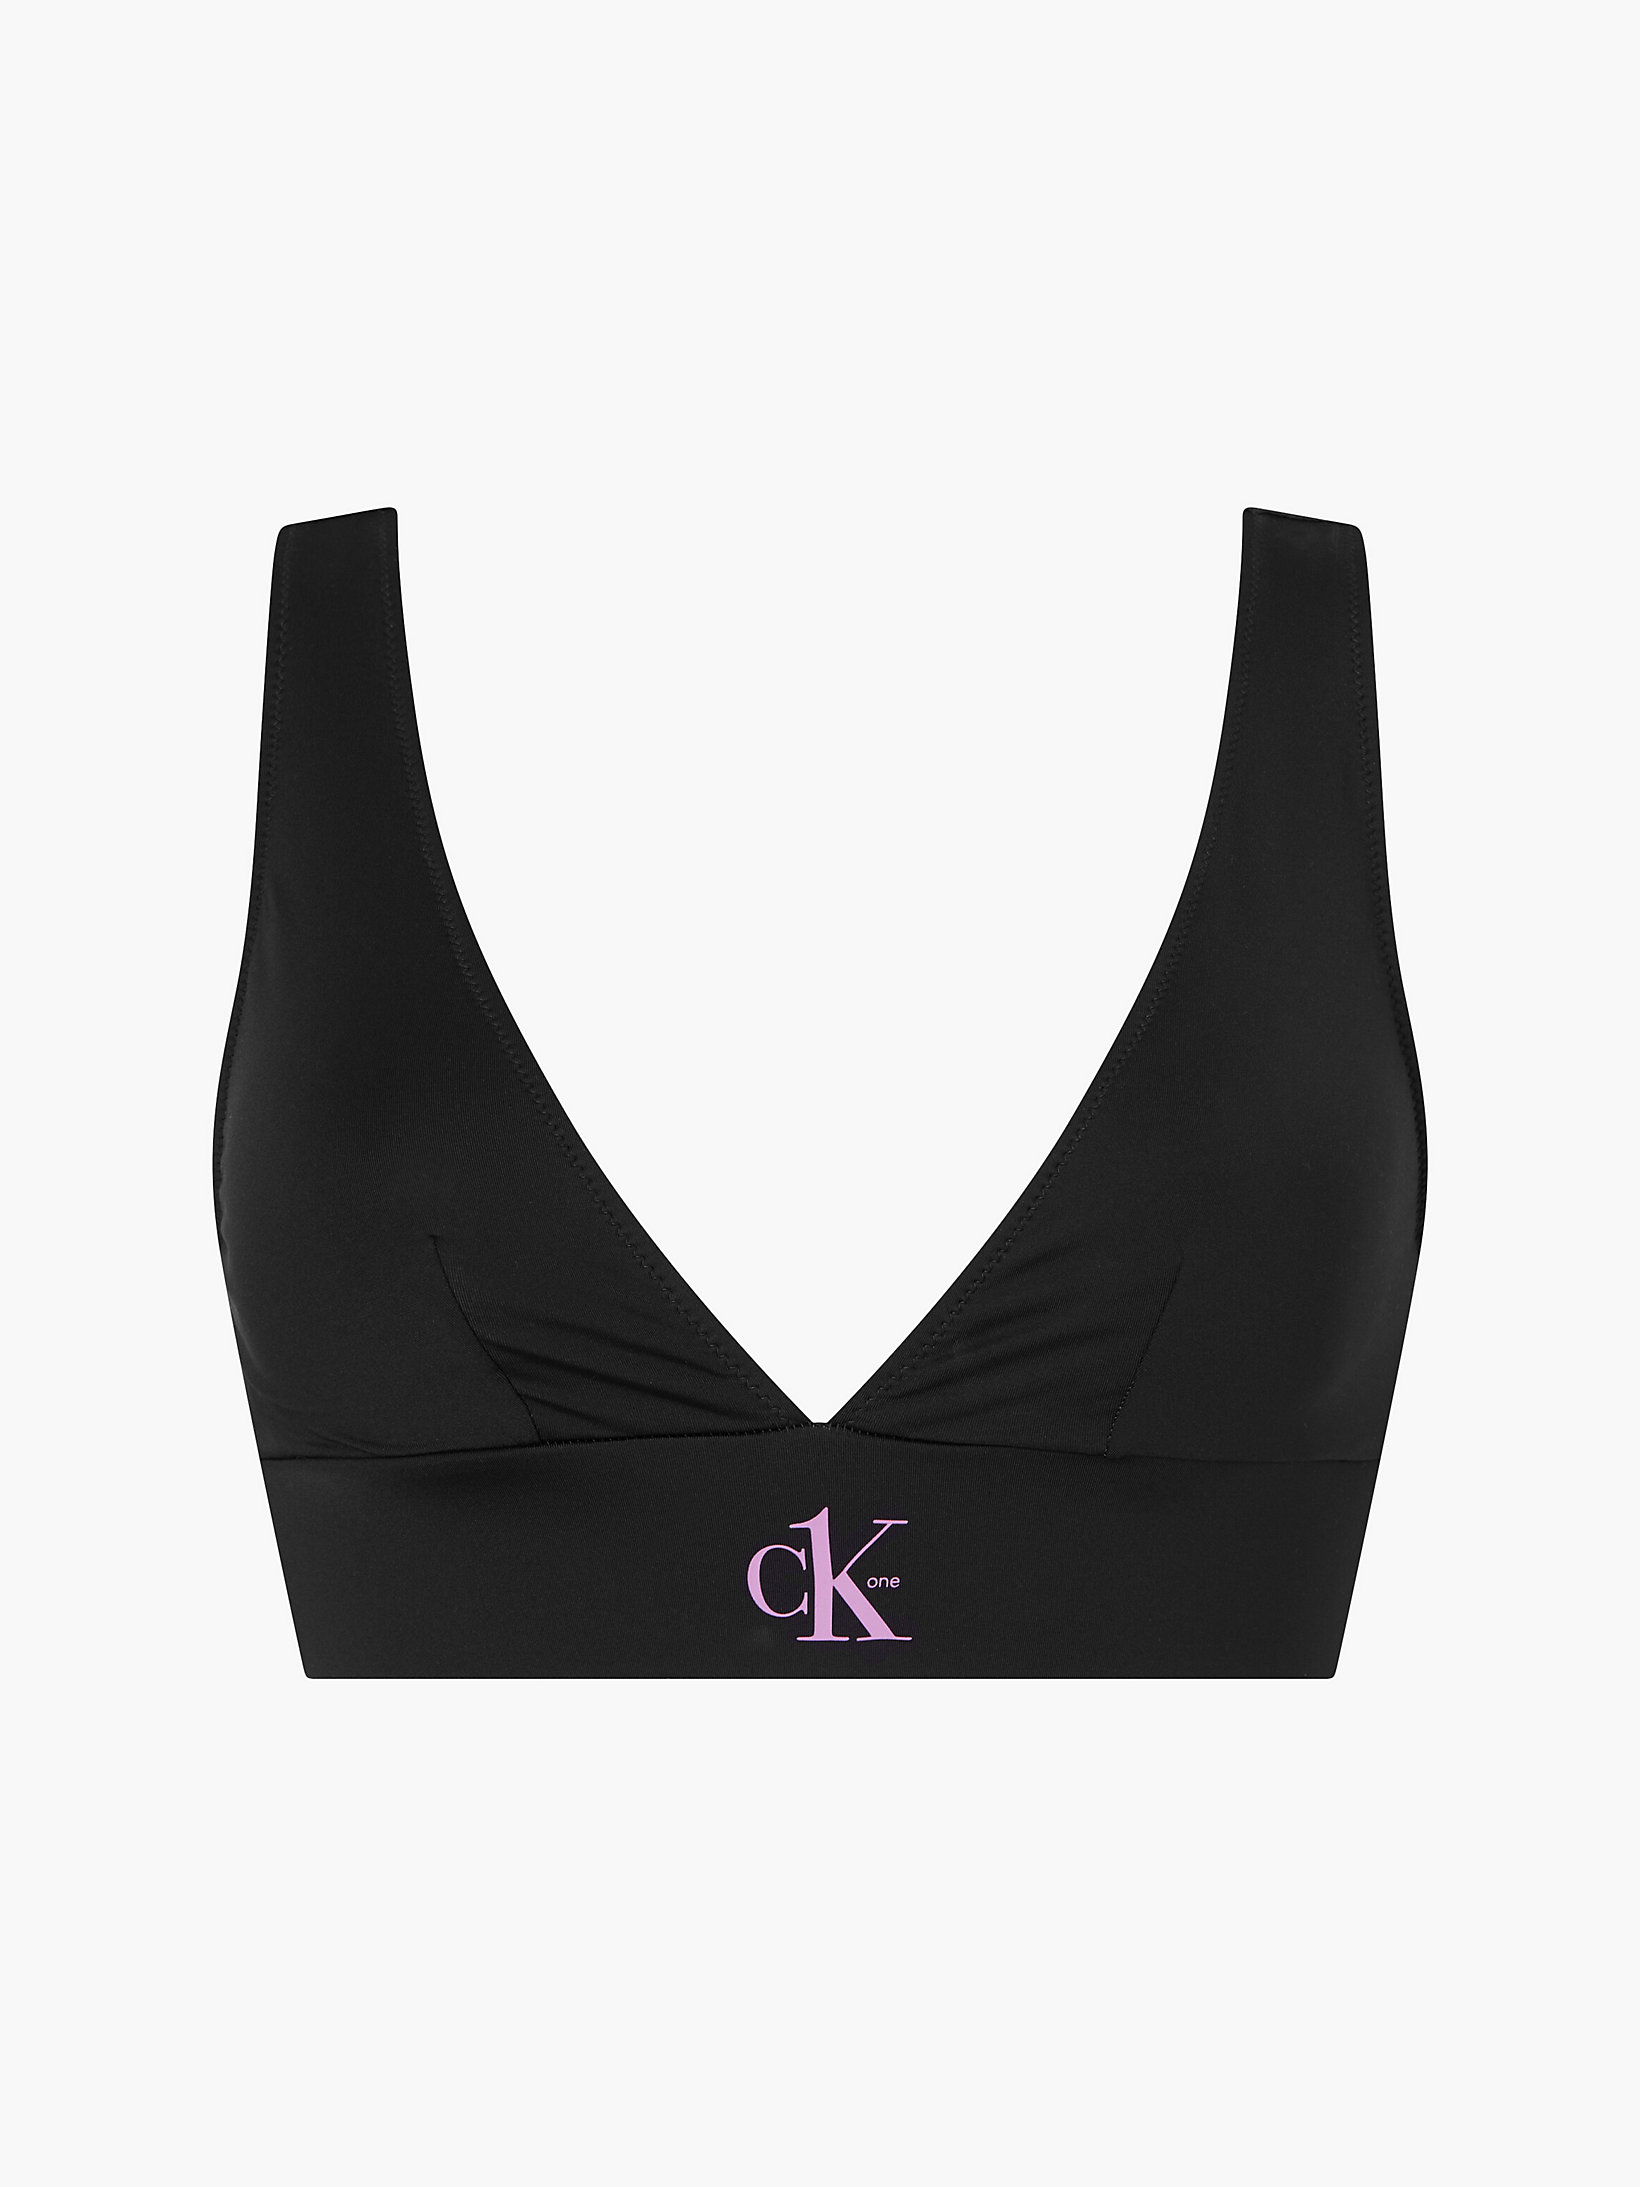 Pvh Black Bralette Bikini Top - CK One undefined women Calvin Klein